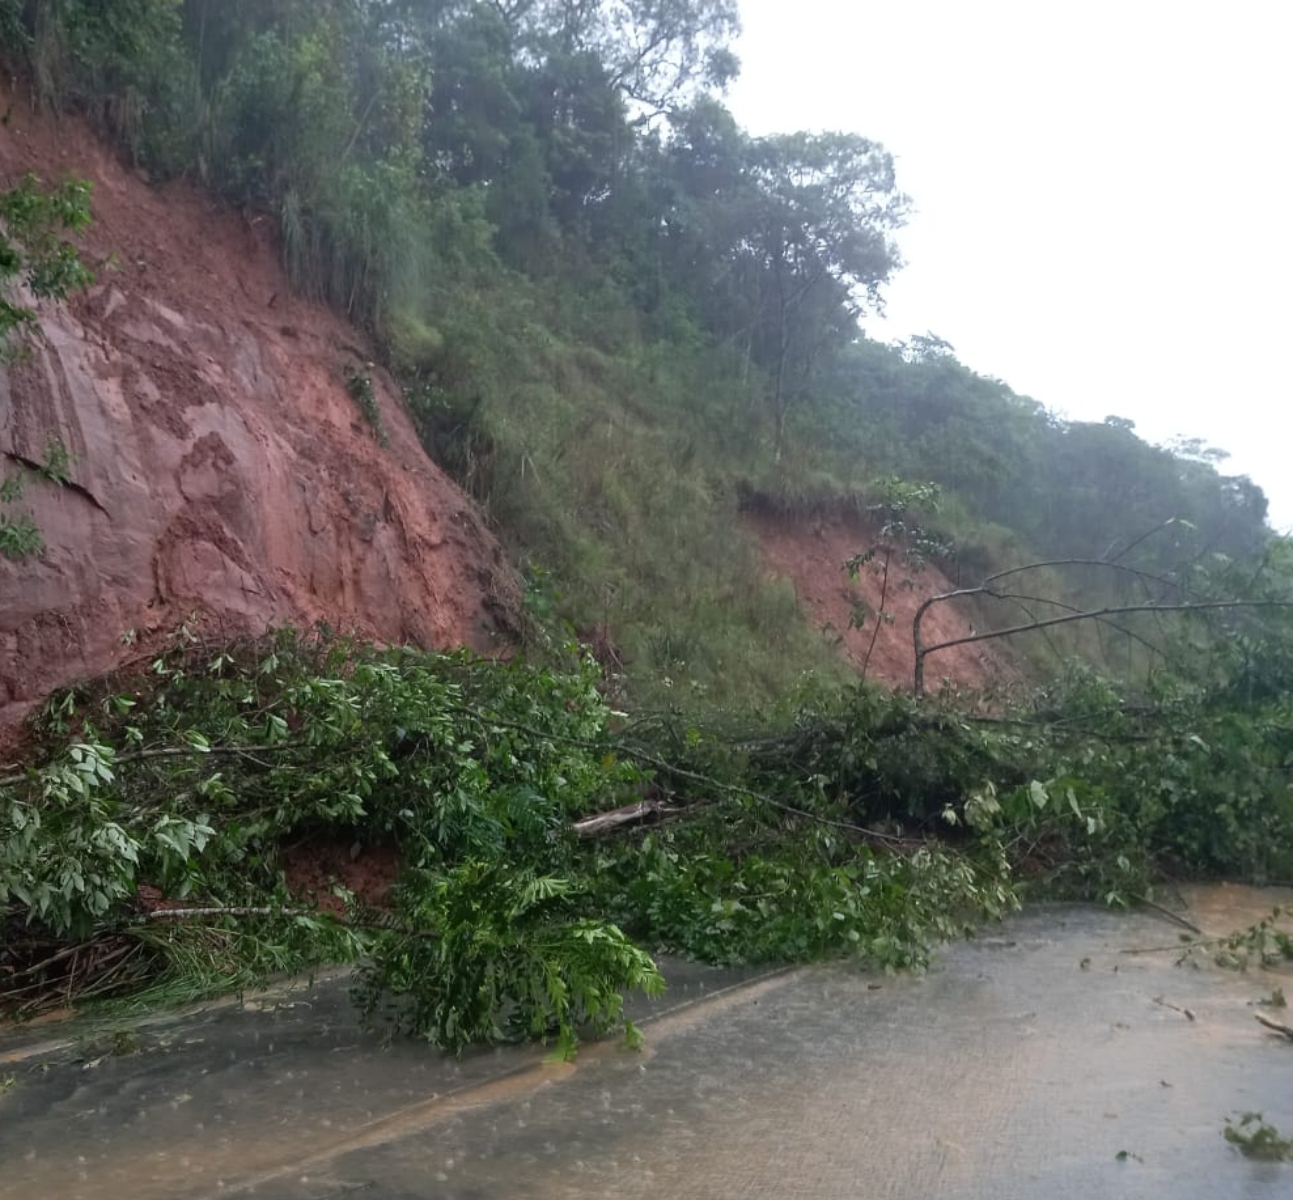  BR-277 têm interdições devido às chuvas em Guarapuava e Candói 